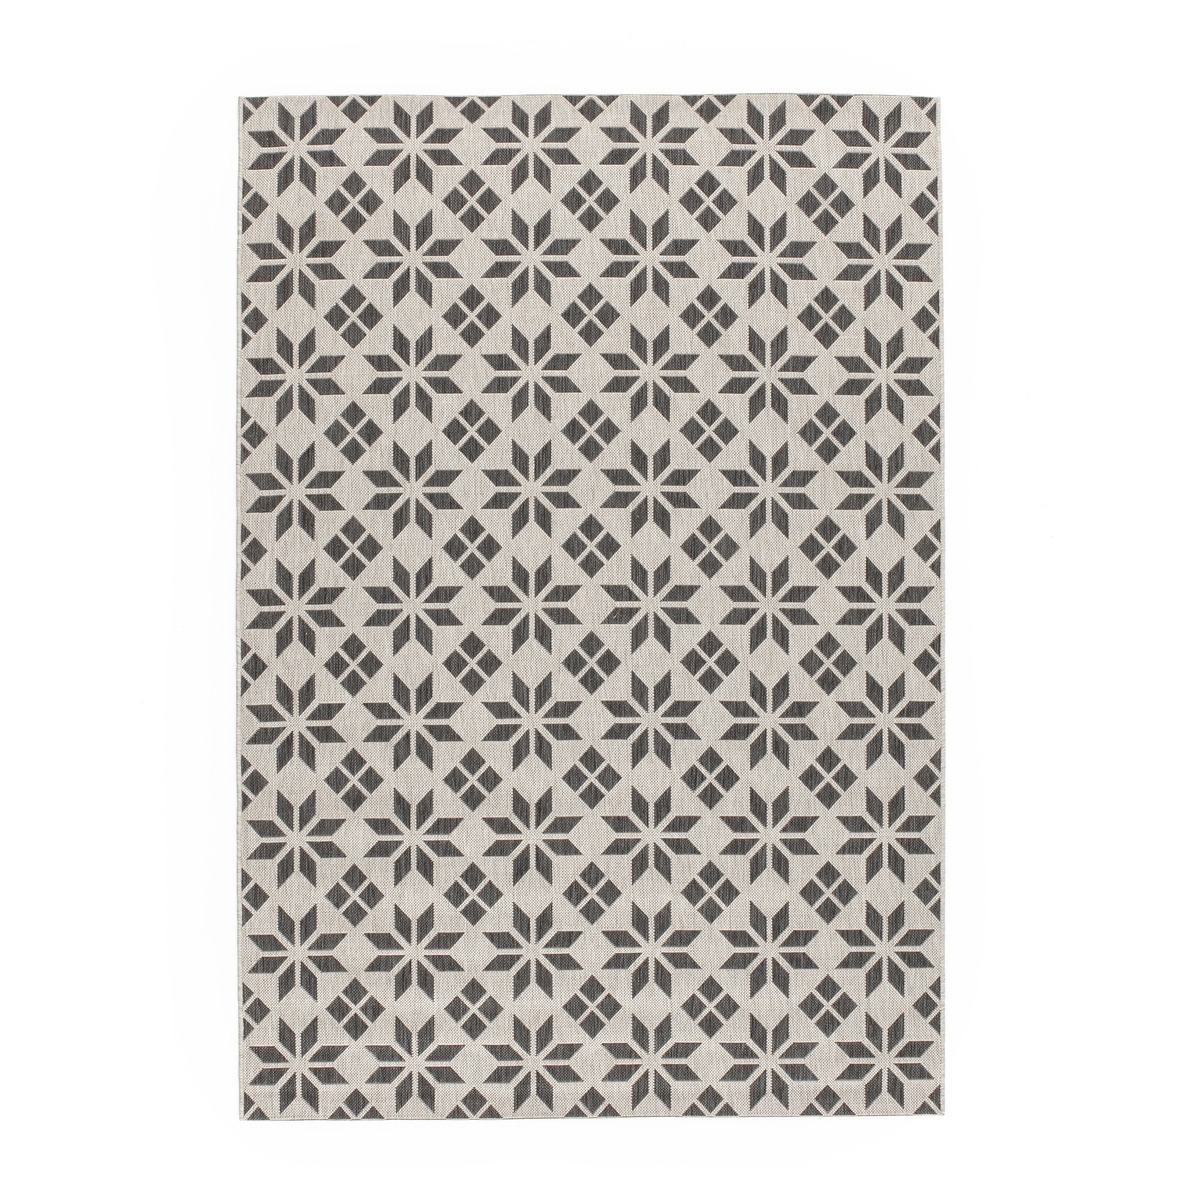 Iswik Cement Tile Indoor/Outdoor Flatwoven Rug - image 1